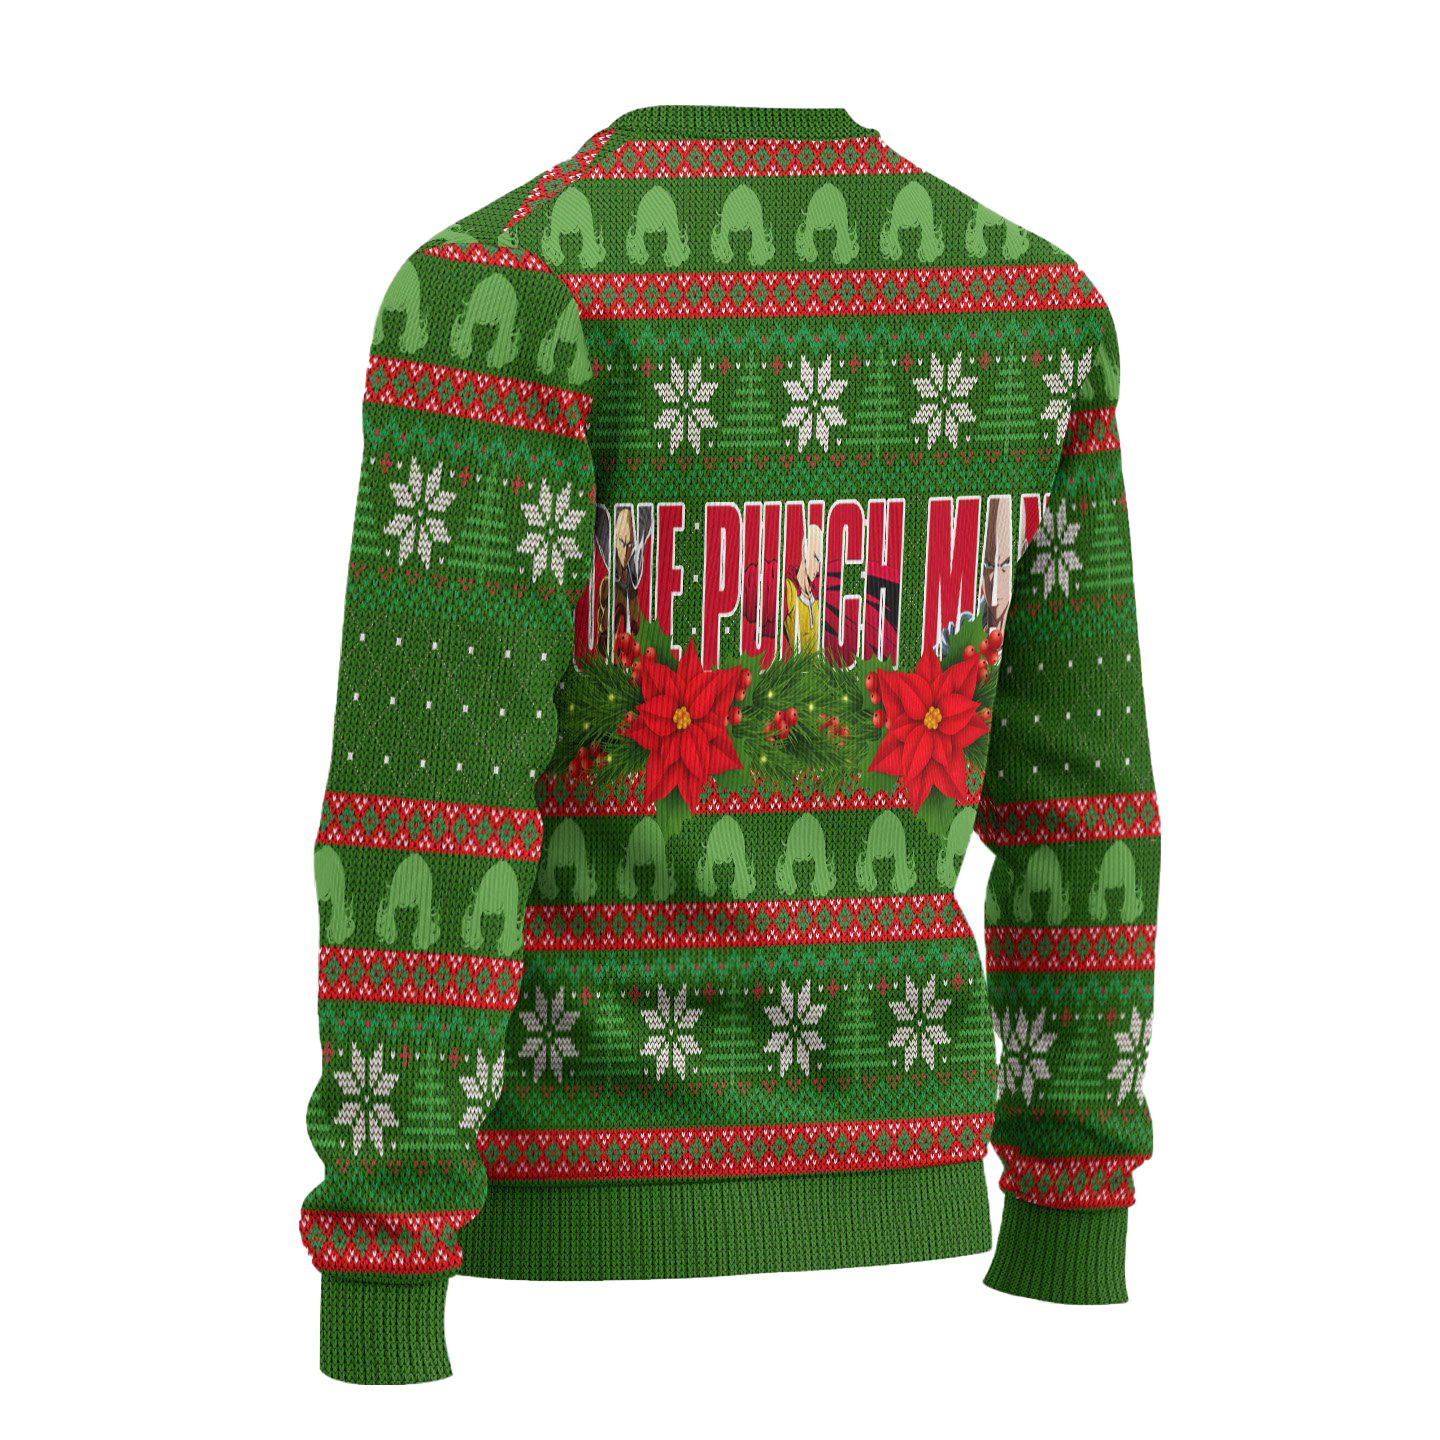 Fubuki x Tatsumaki Anime Ugly Christmas Sweater Custom One Punch Man Xmas Gift